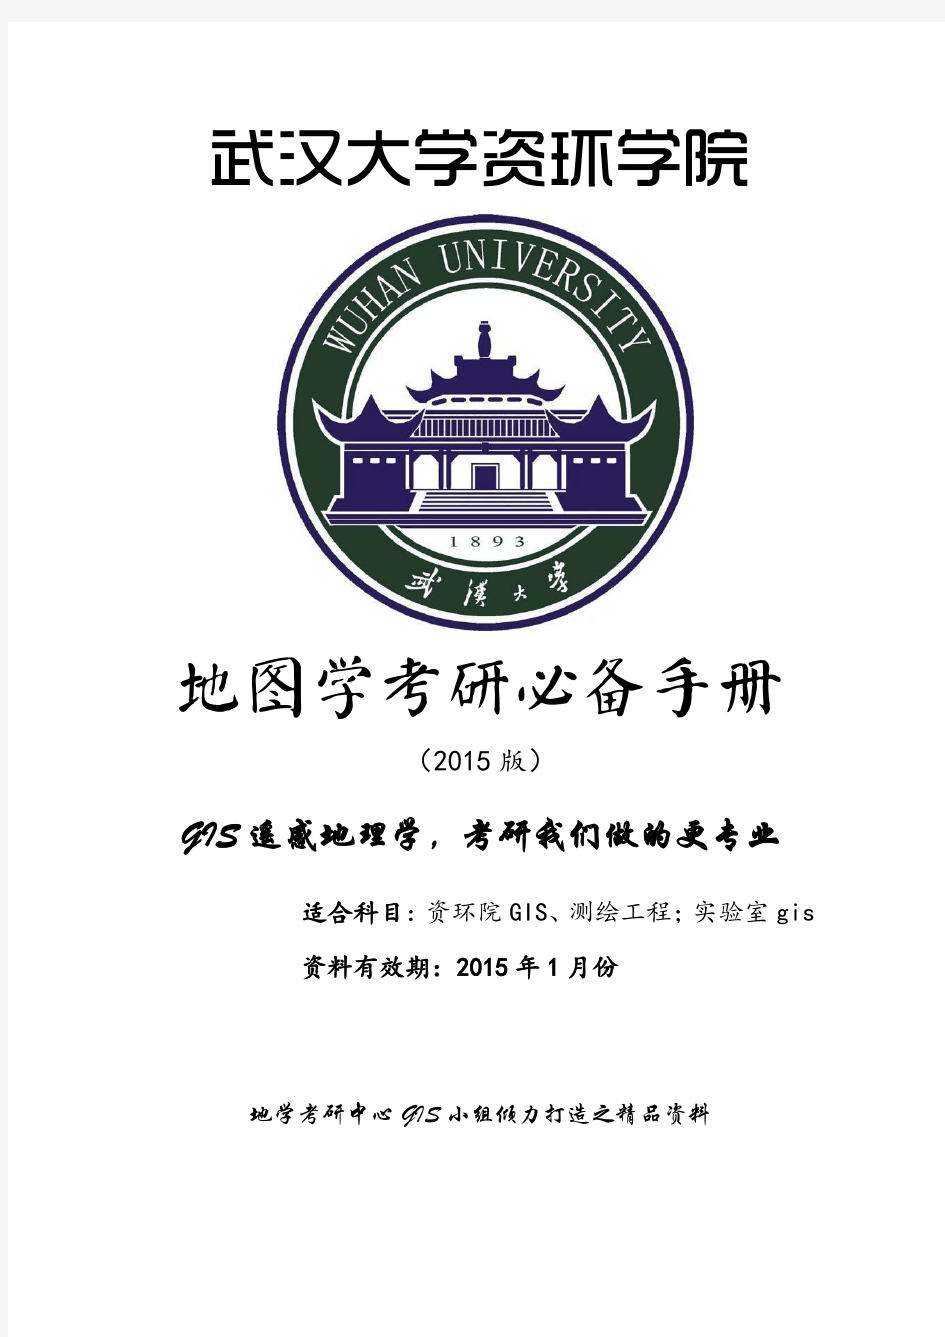 武汉大学祝国瑞地图学考研历年真题及答案(适用于测绘工程和地图制图与地理信息工程考研)